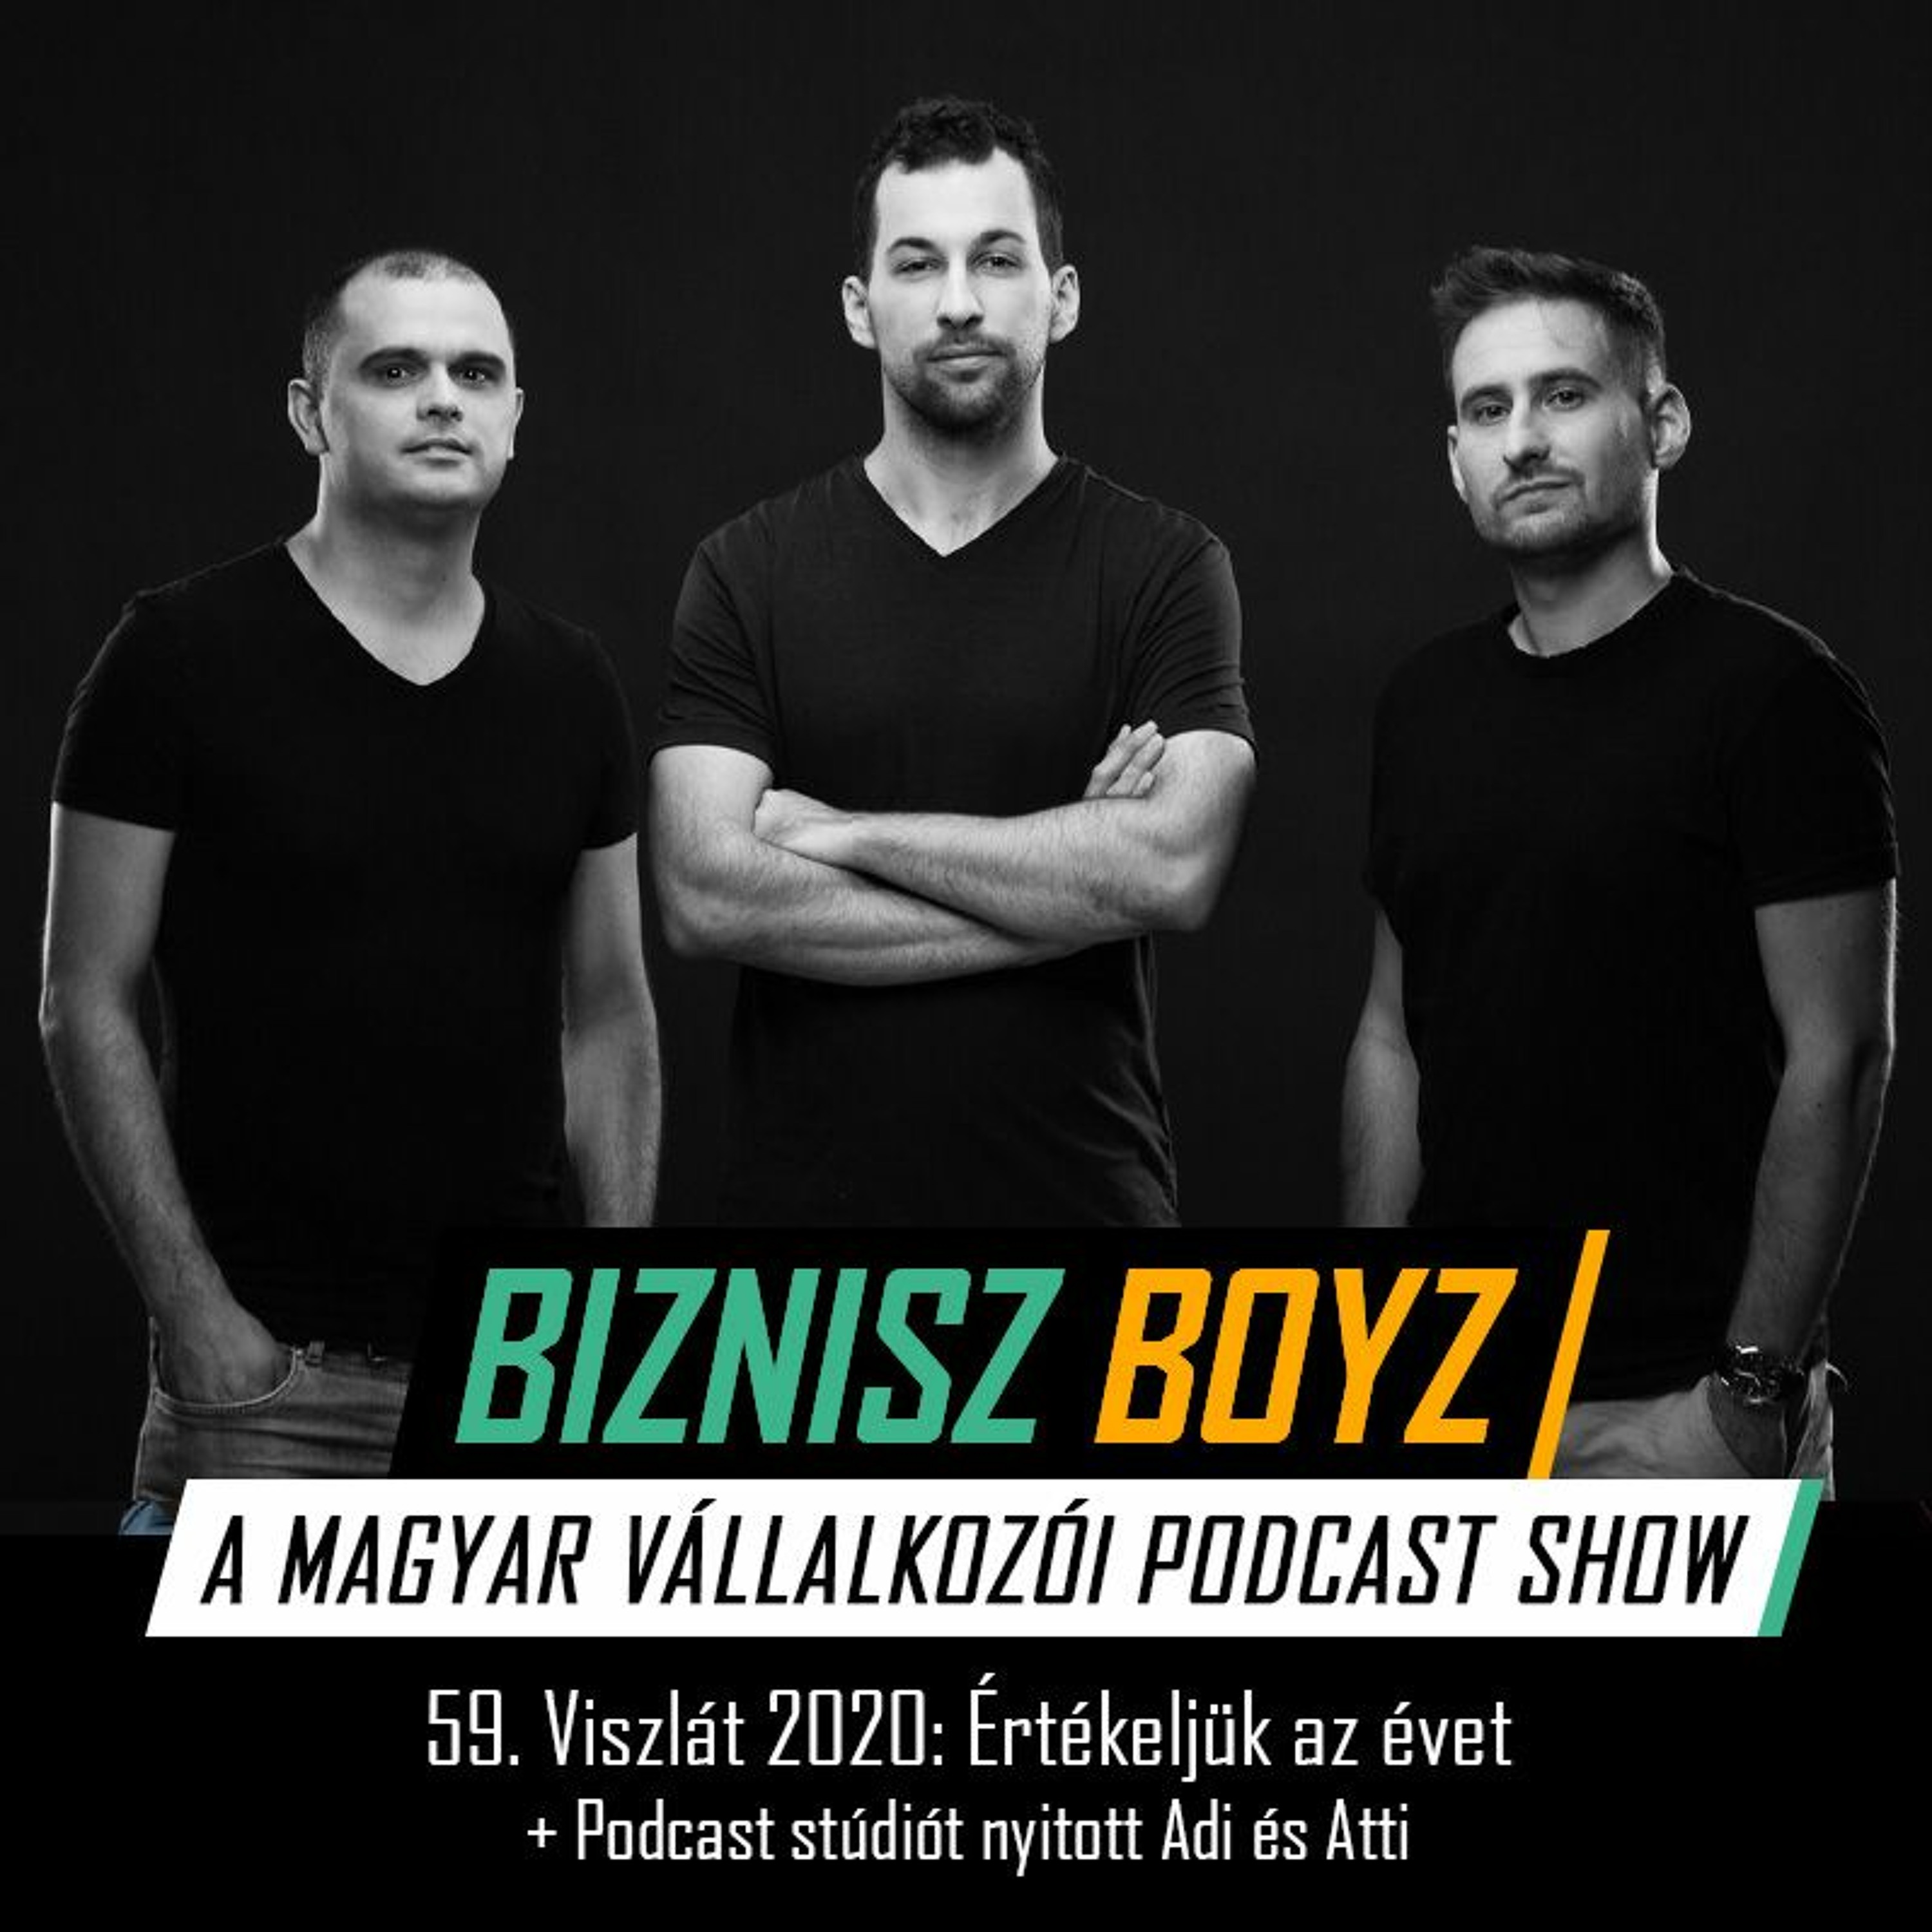 59. Viszlát 2020: Értékeljük az évet + Podcast stúdiót nyitott Adi és Atti | Biznisz Boyz Podcast